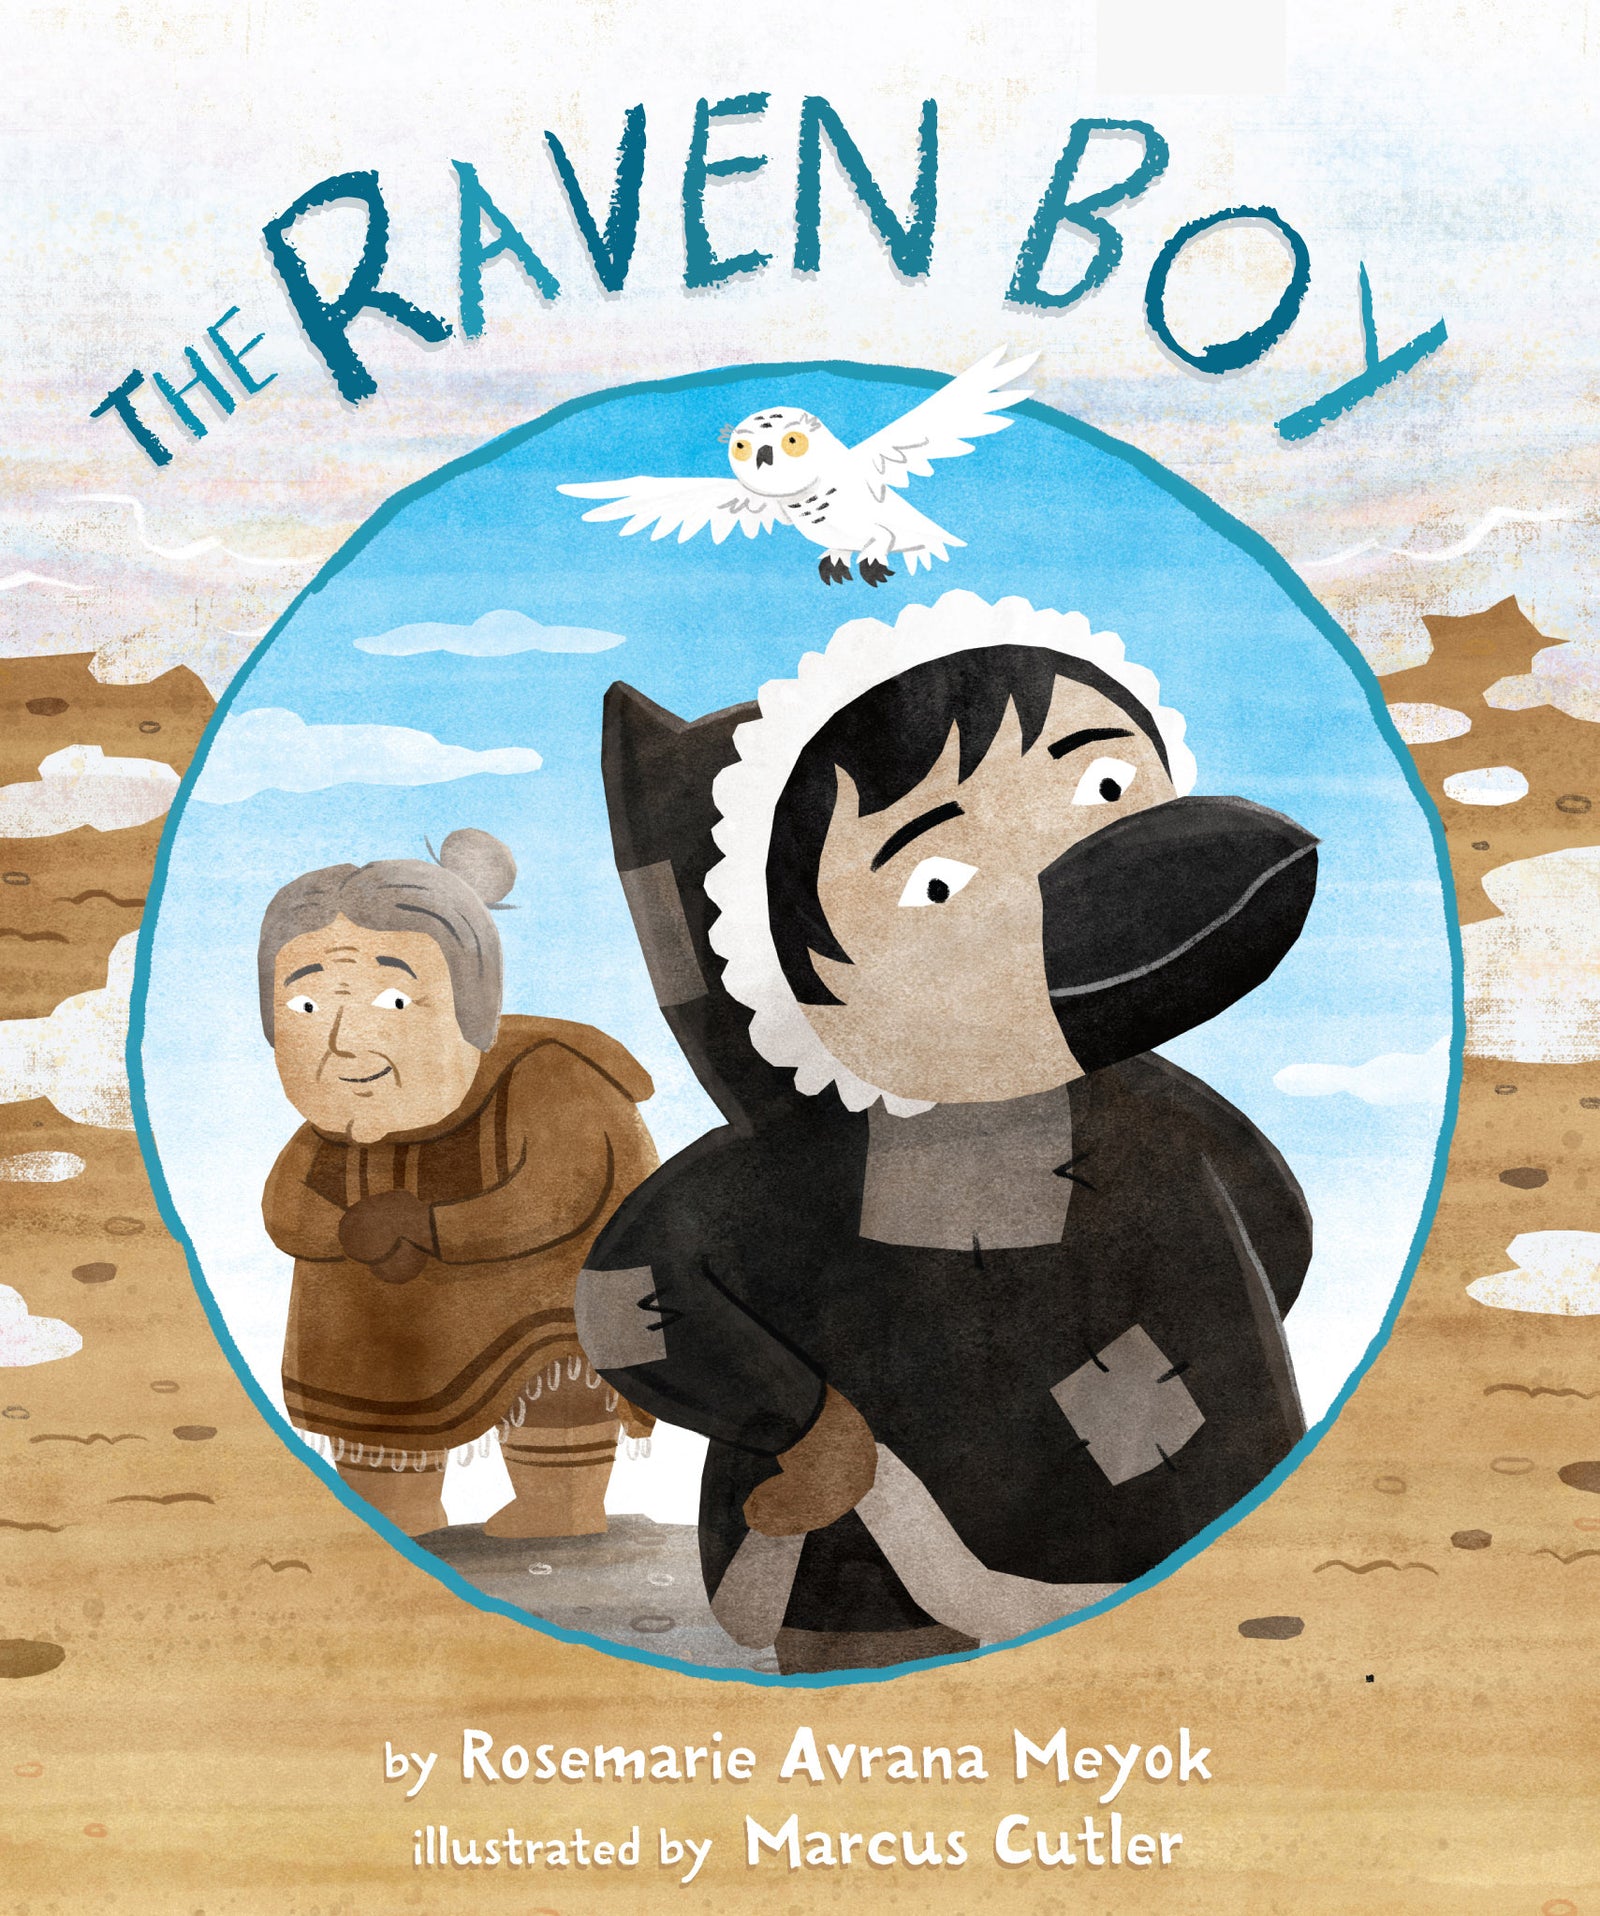 The Raven Boy